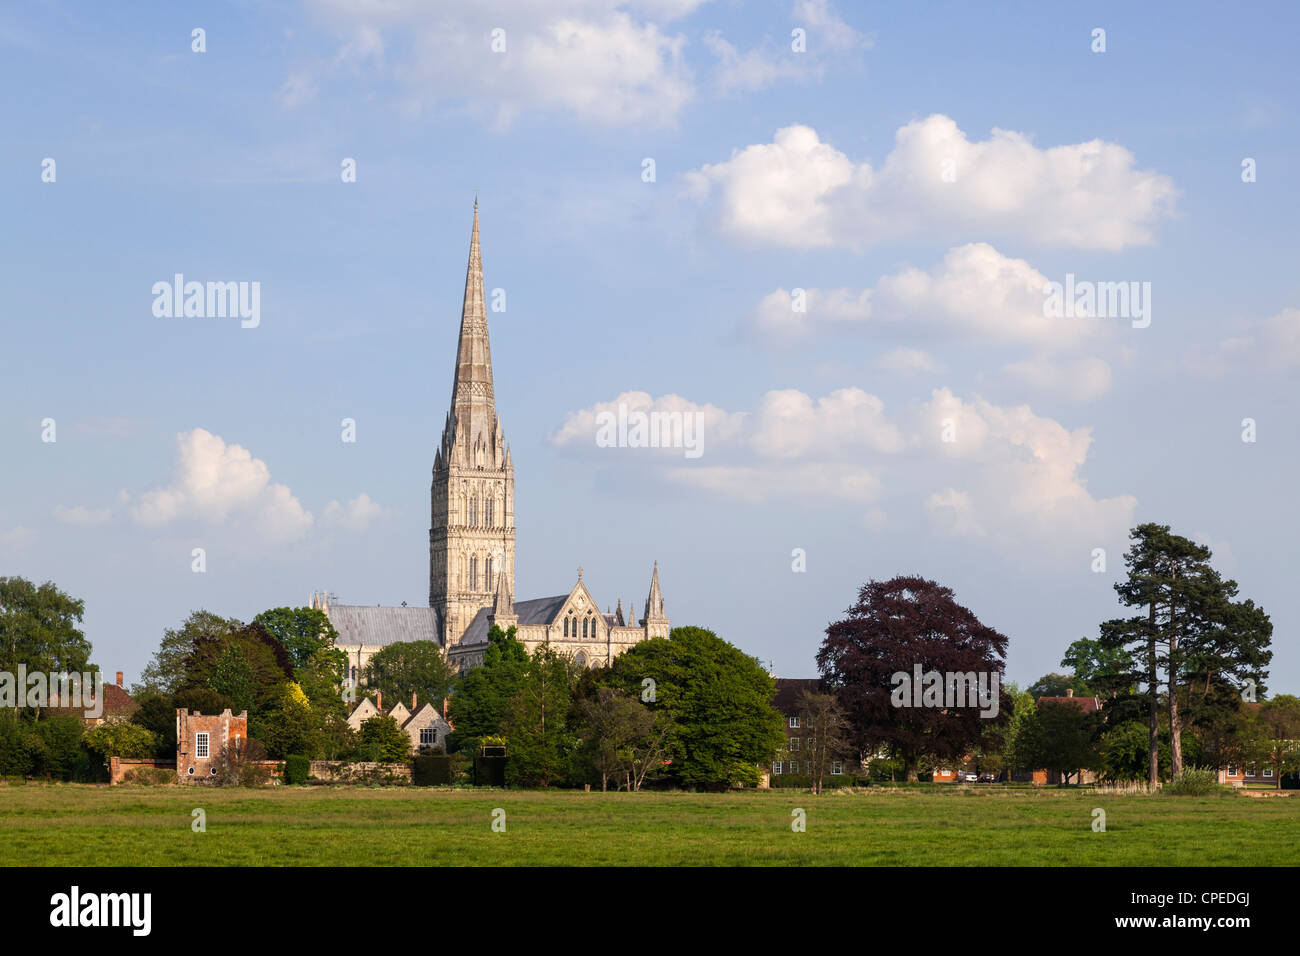 La cattedrale di Salisbury, costruita tra il 1310 e il 1330, ha la guglia più alta d'Inghilterra. Salisbury, Wiltshire Inghilterra. Foto Stock